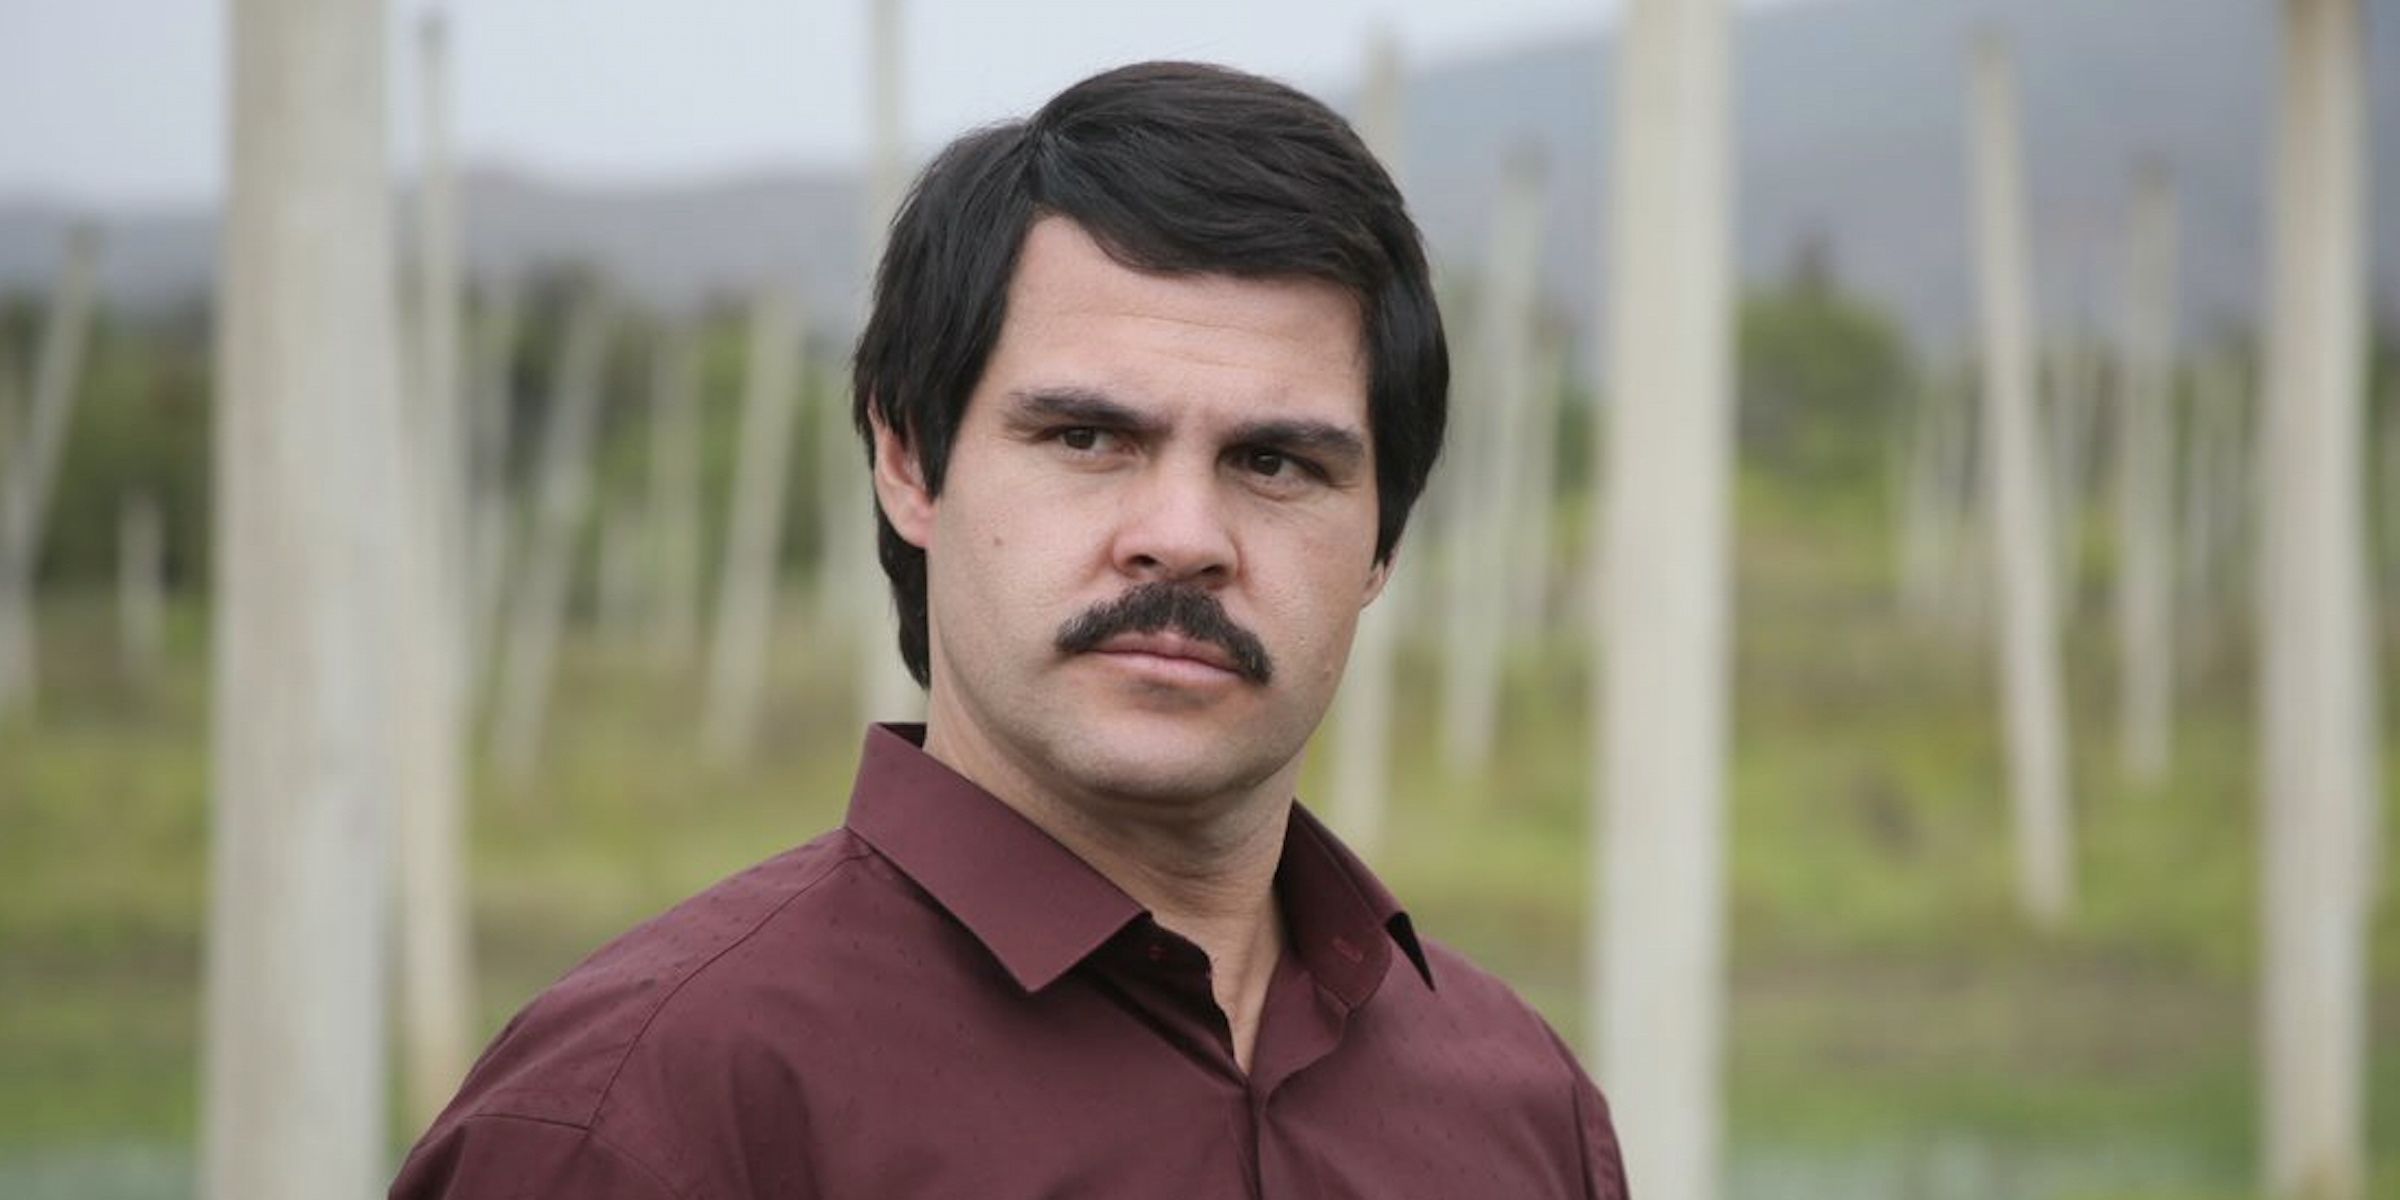 Marco de la or in El Chapo